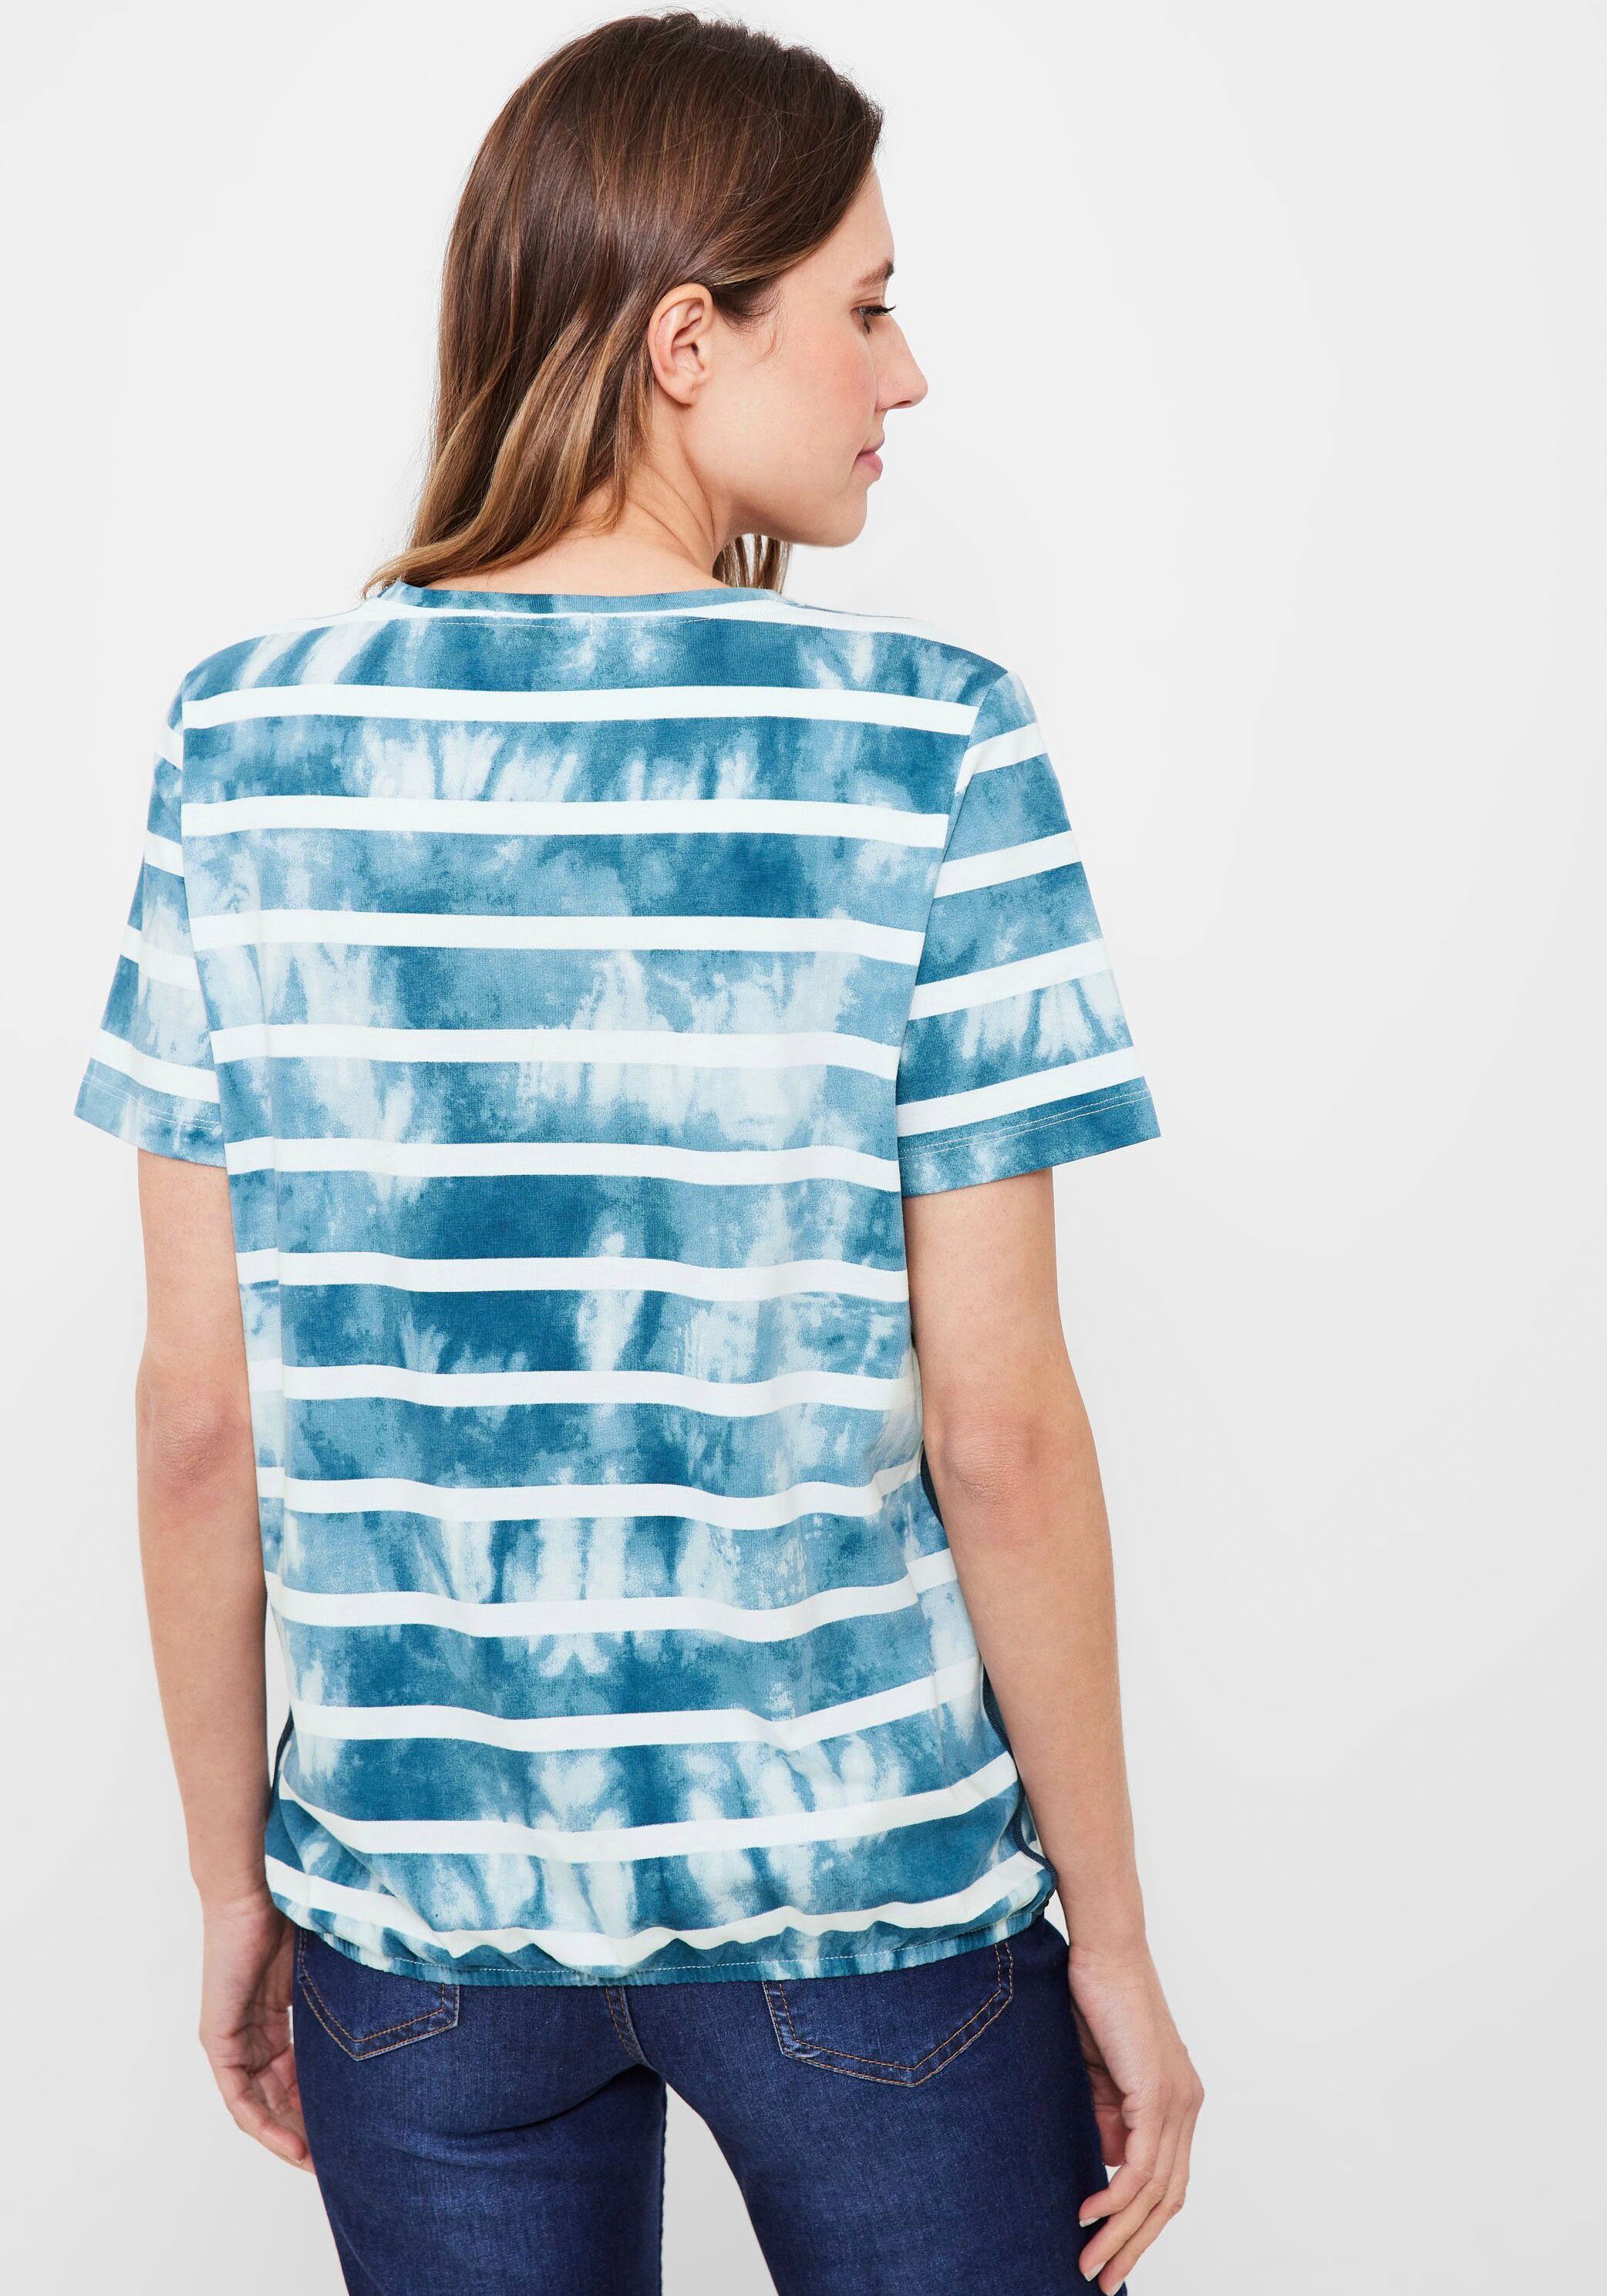 Cecil Print-Shirt mit teal Paillettenverzierung blue